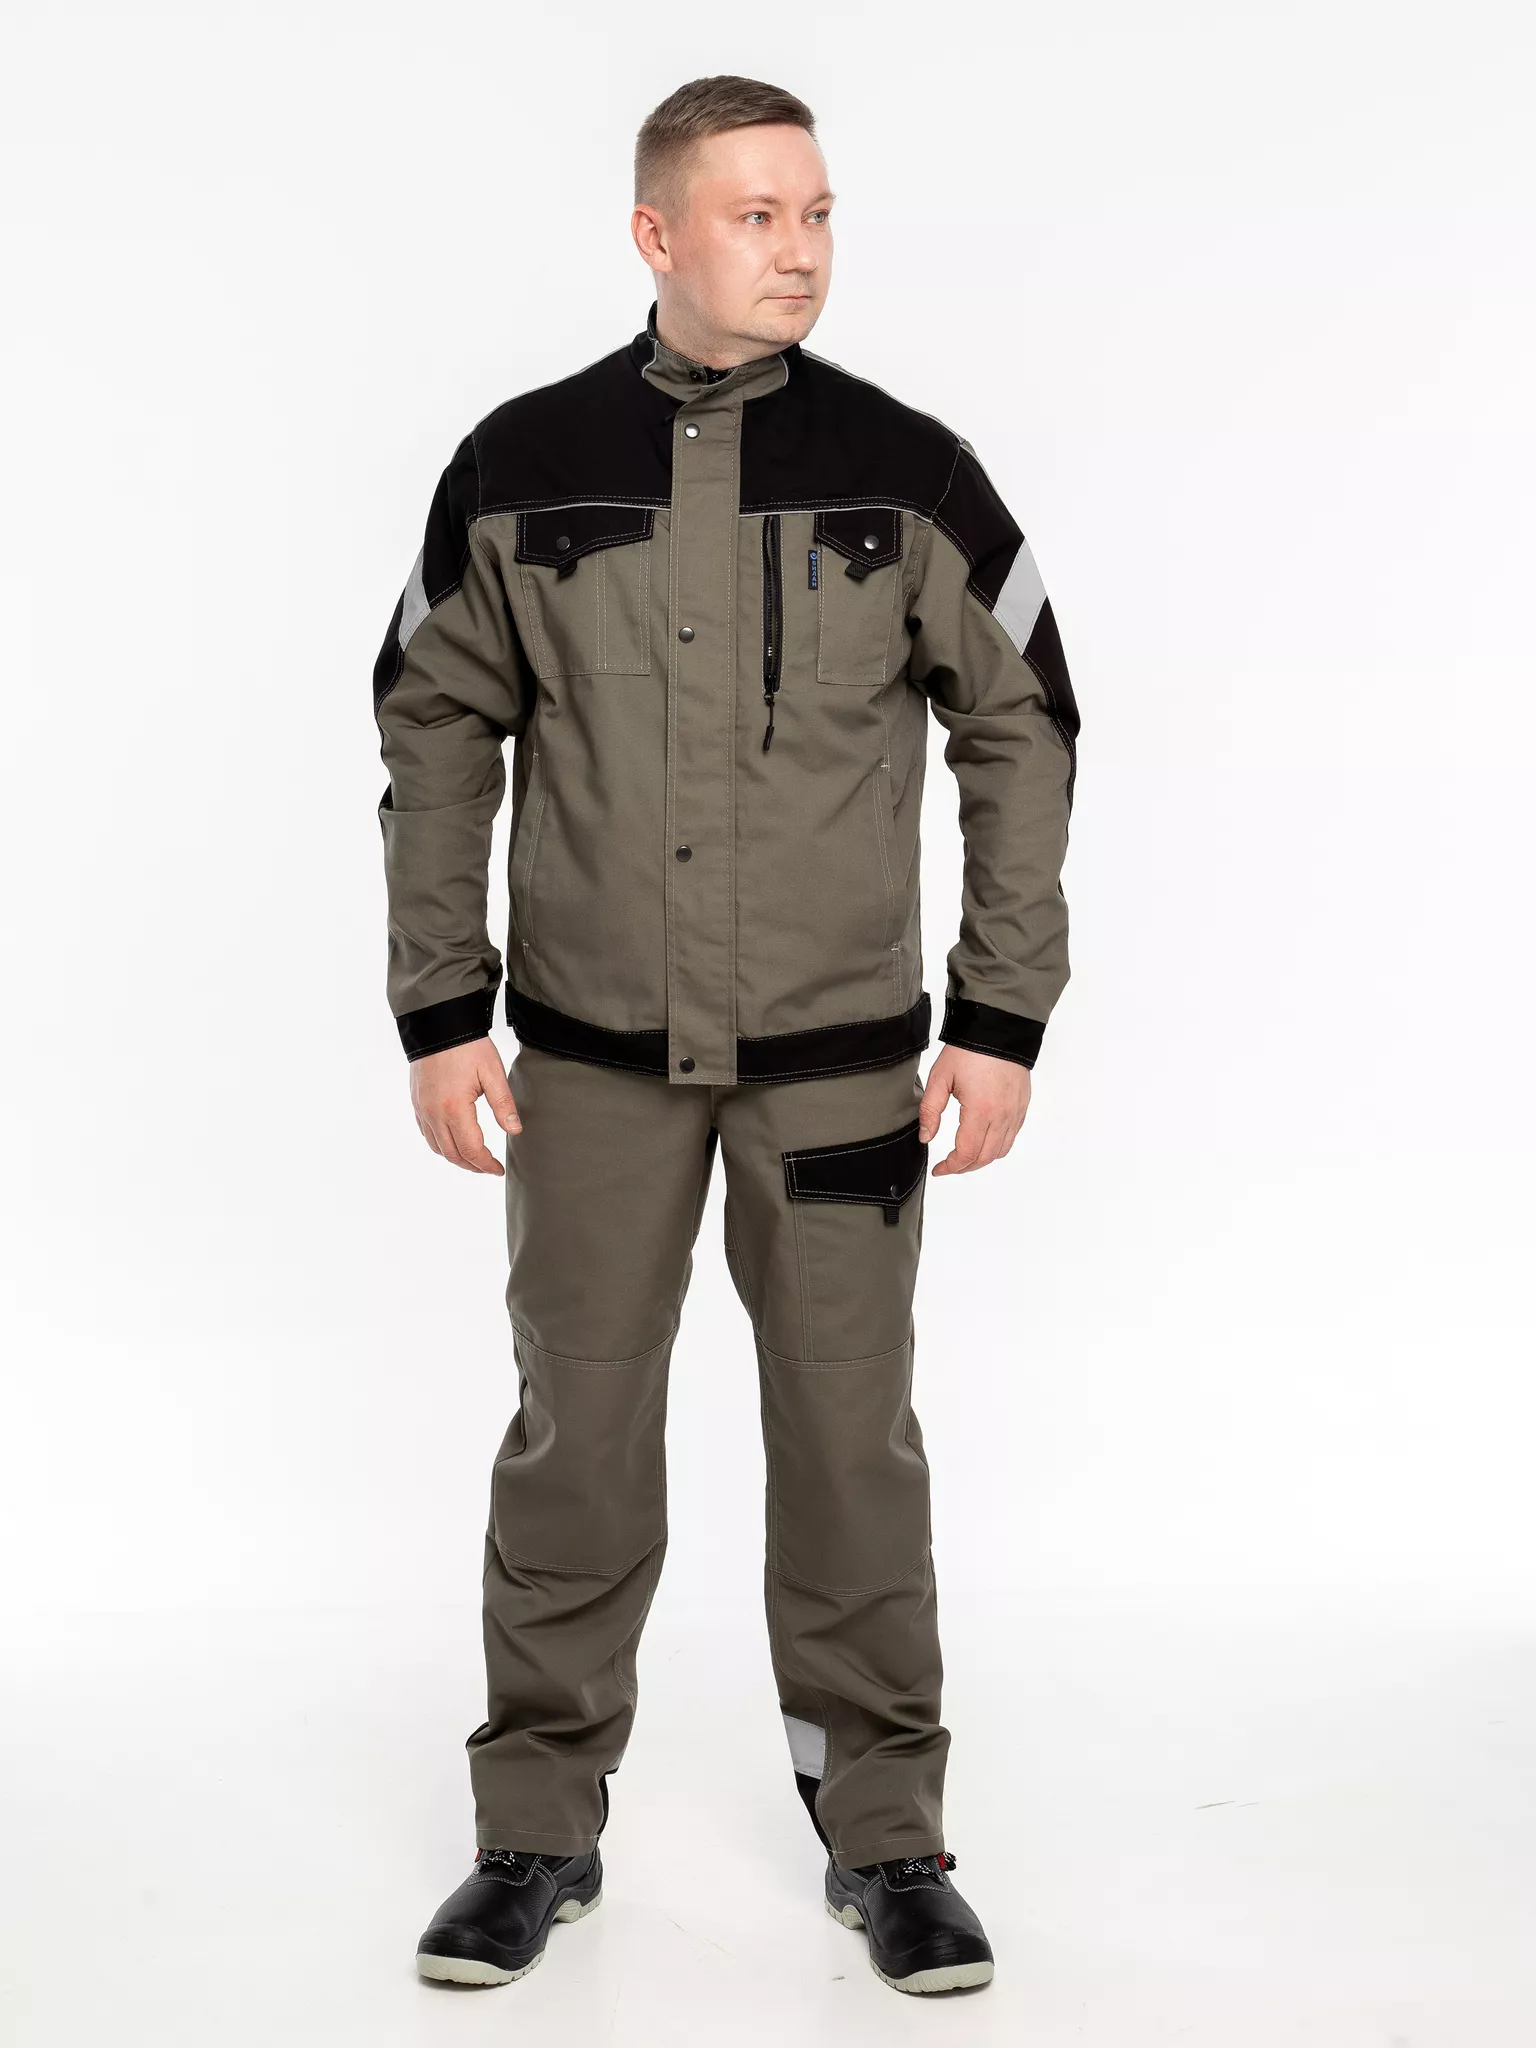 Куртка рабочая КР.366 р.60-62, рост 170-176 (цвет оливковый, отделка черная.СОП)